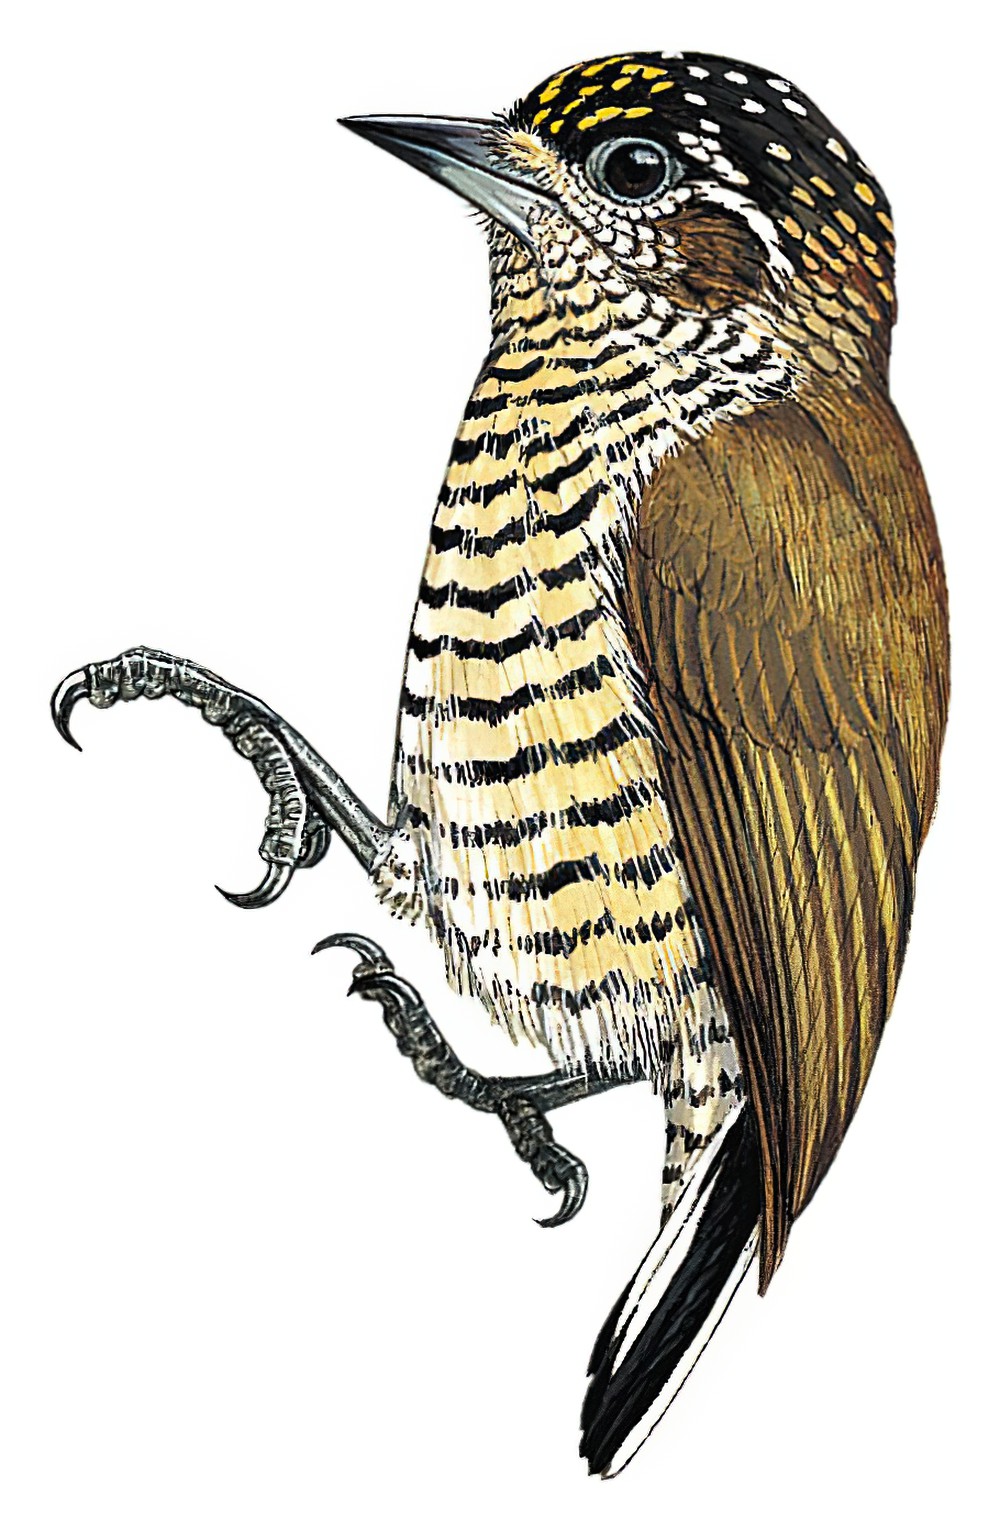 Orinoco Piculet / Picumnus pumilus